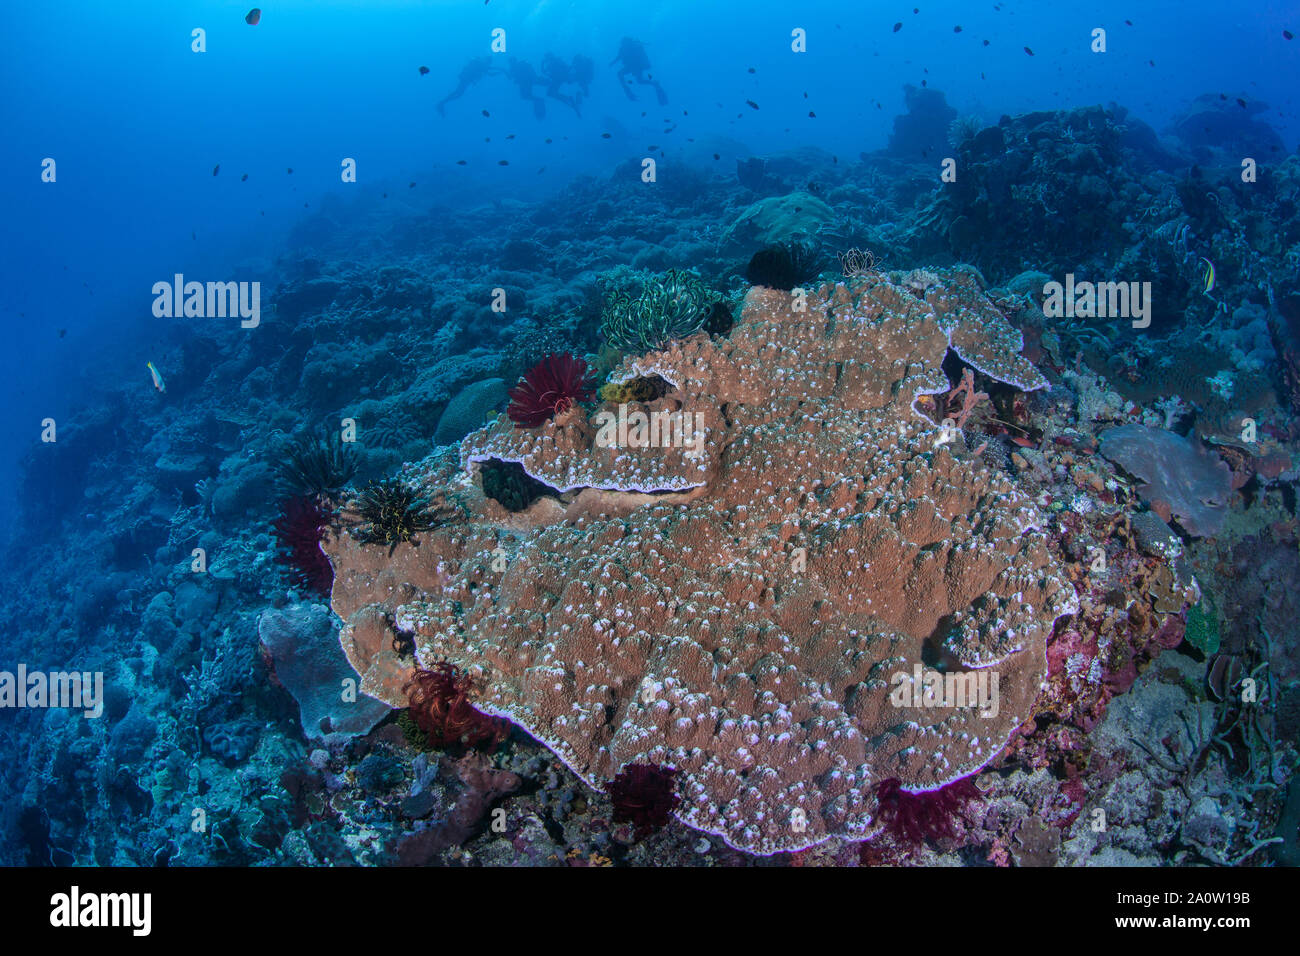 Crinoidi coloratissimi popolano bordi di una placcatura di grandi dimensioni di corallo. Subacquei stagliano in blu sullo sfondo dell'acqua. Nusa Lembogan, Bali, Inndonesia 2016 Foto Stock